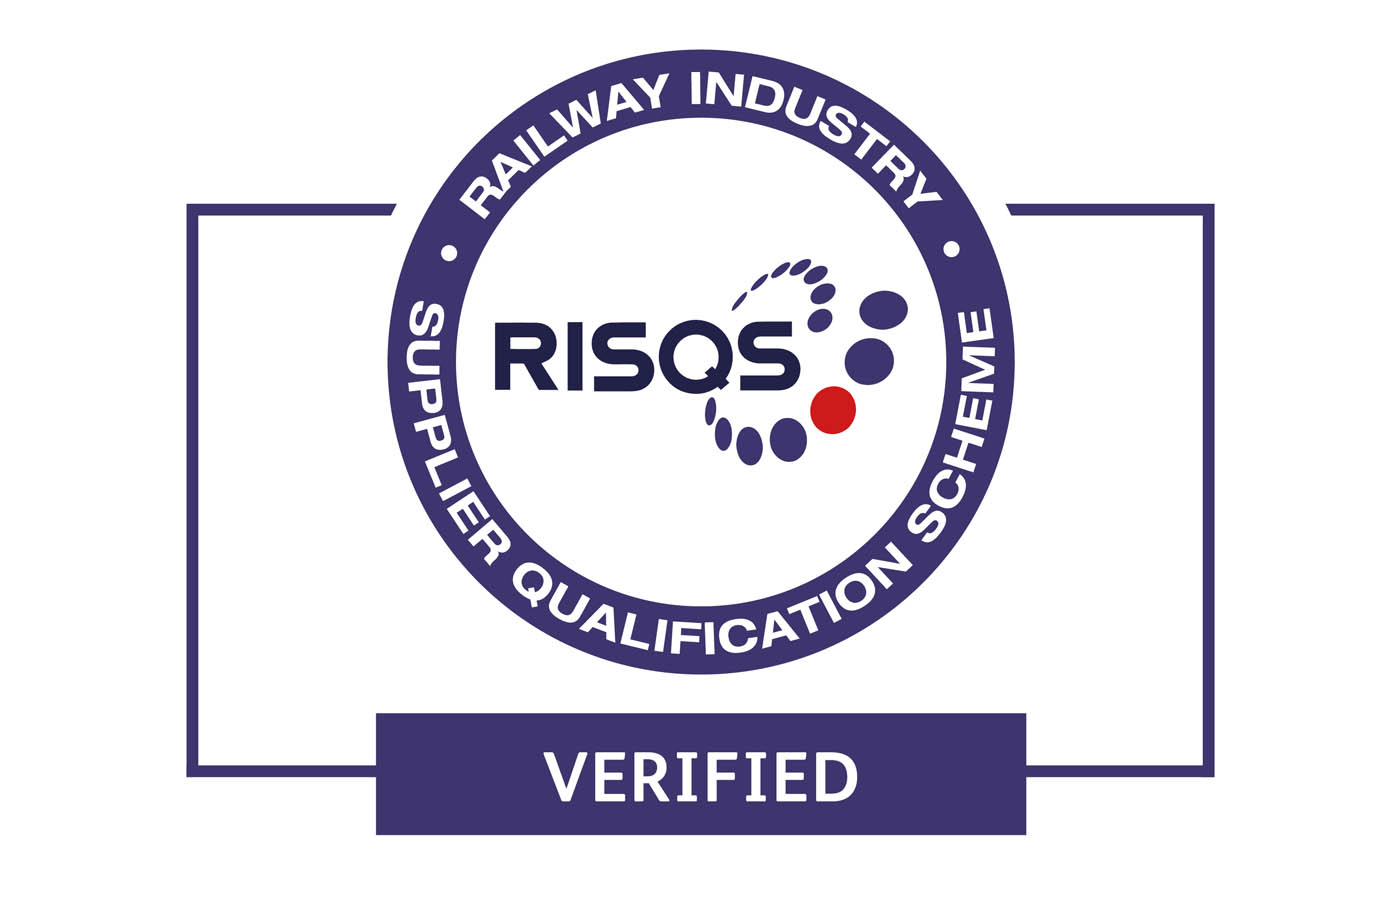 Ferrabyrne attain Railway Industry Supplier Qualification Scheme (RISQS)